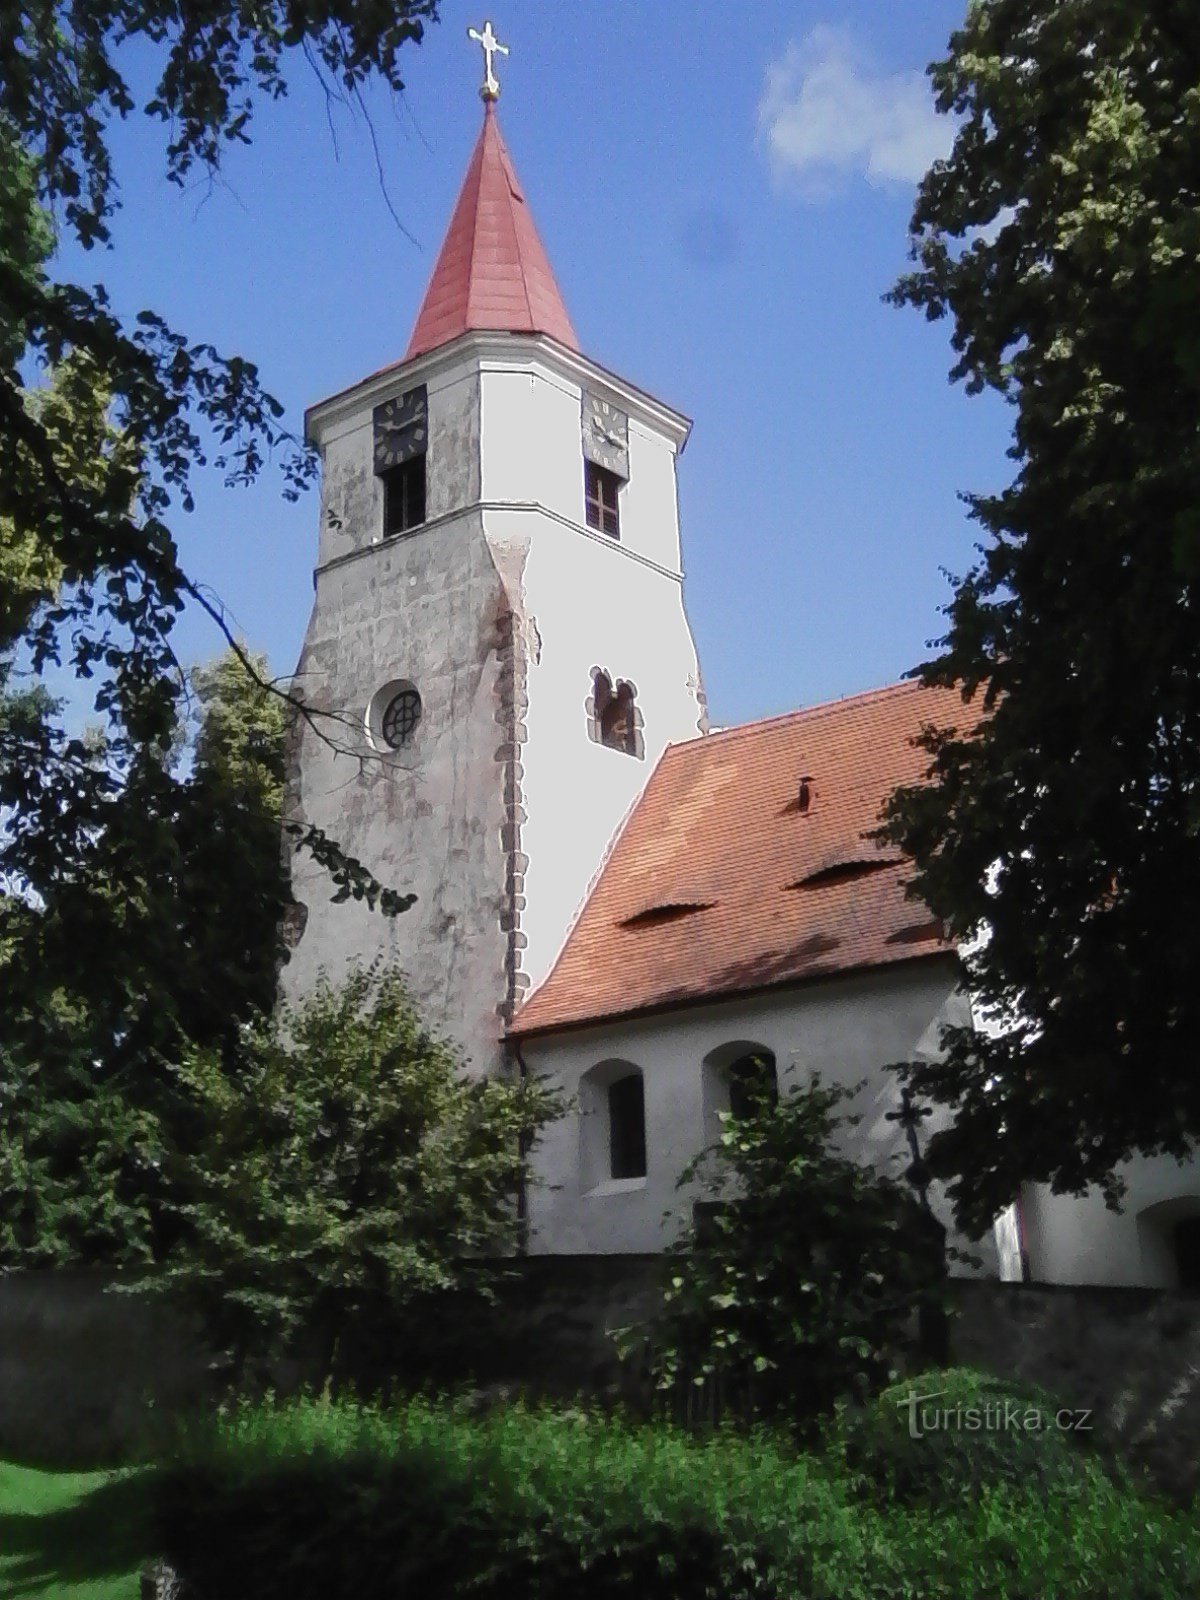 2. Igreja românica tardia de S. Mikuláš em Nechvalice, talvez por volta de 1240.